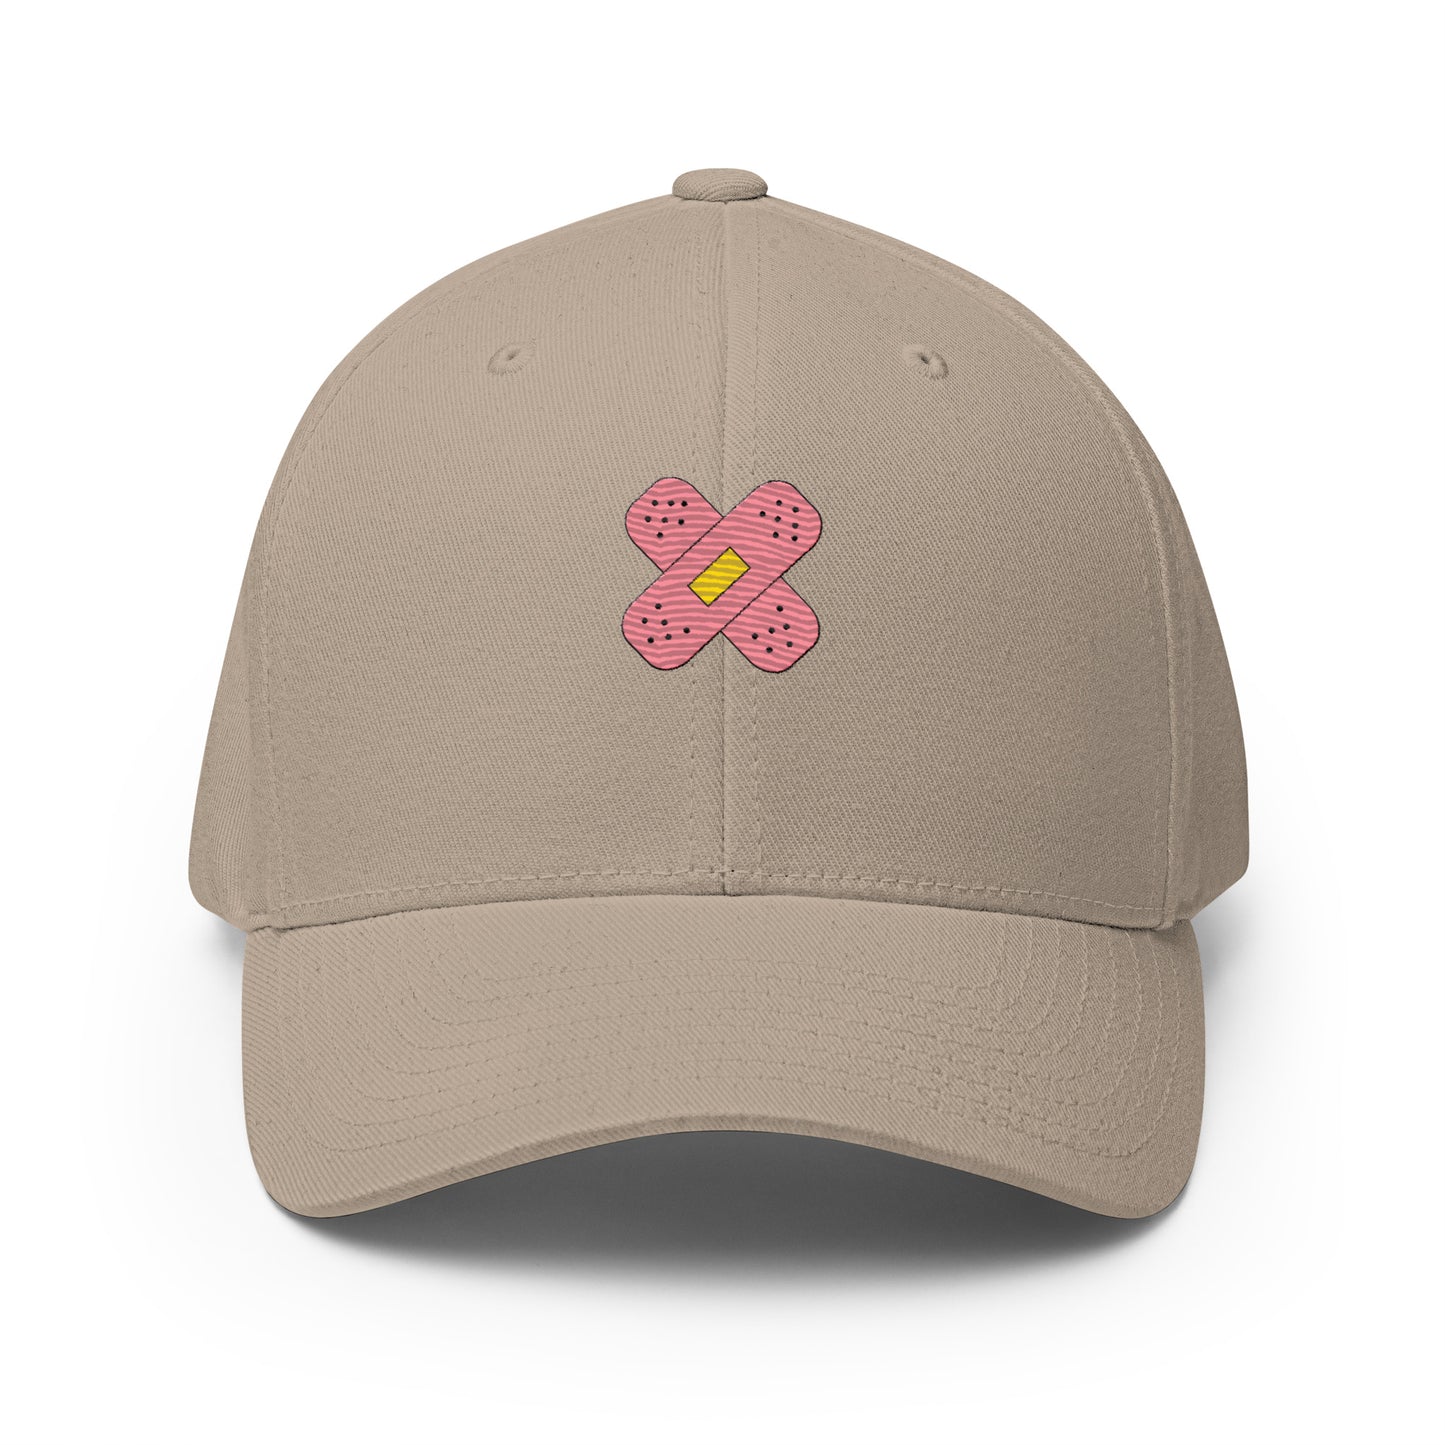 Baseball Cap with Band-aid Symbol